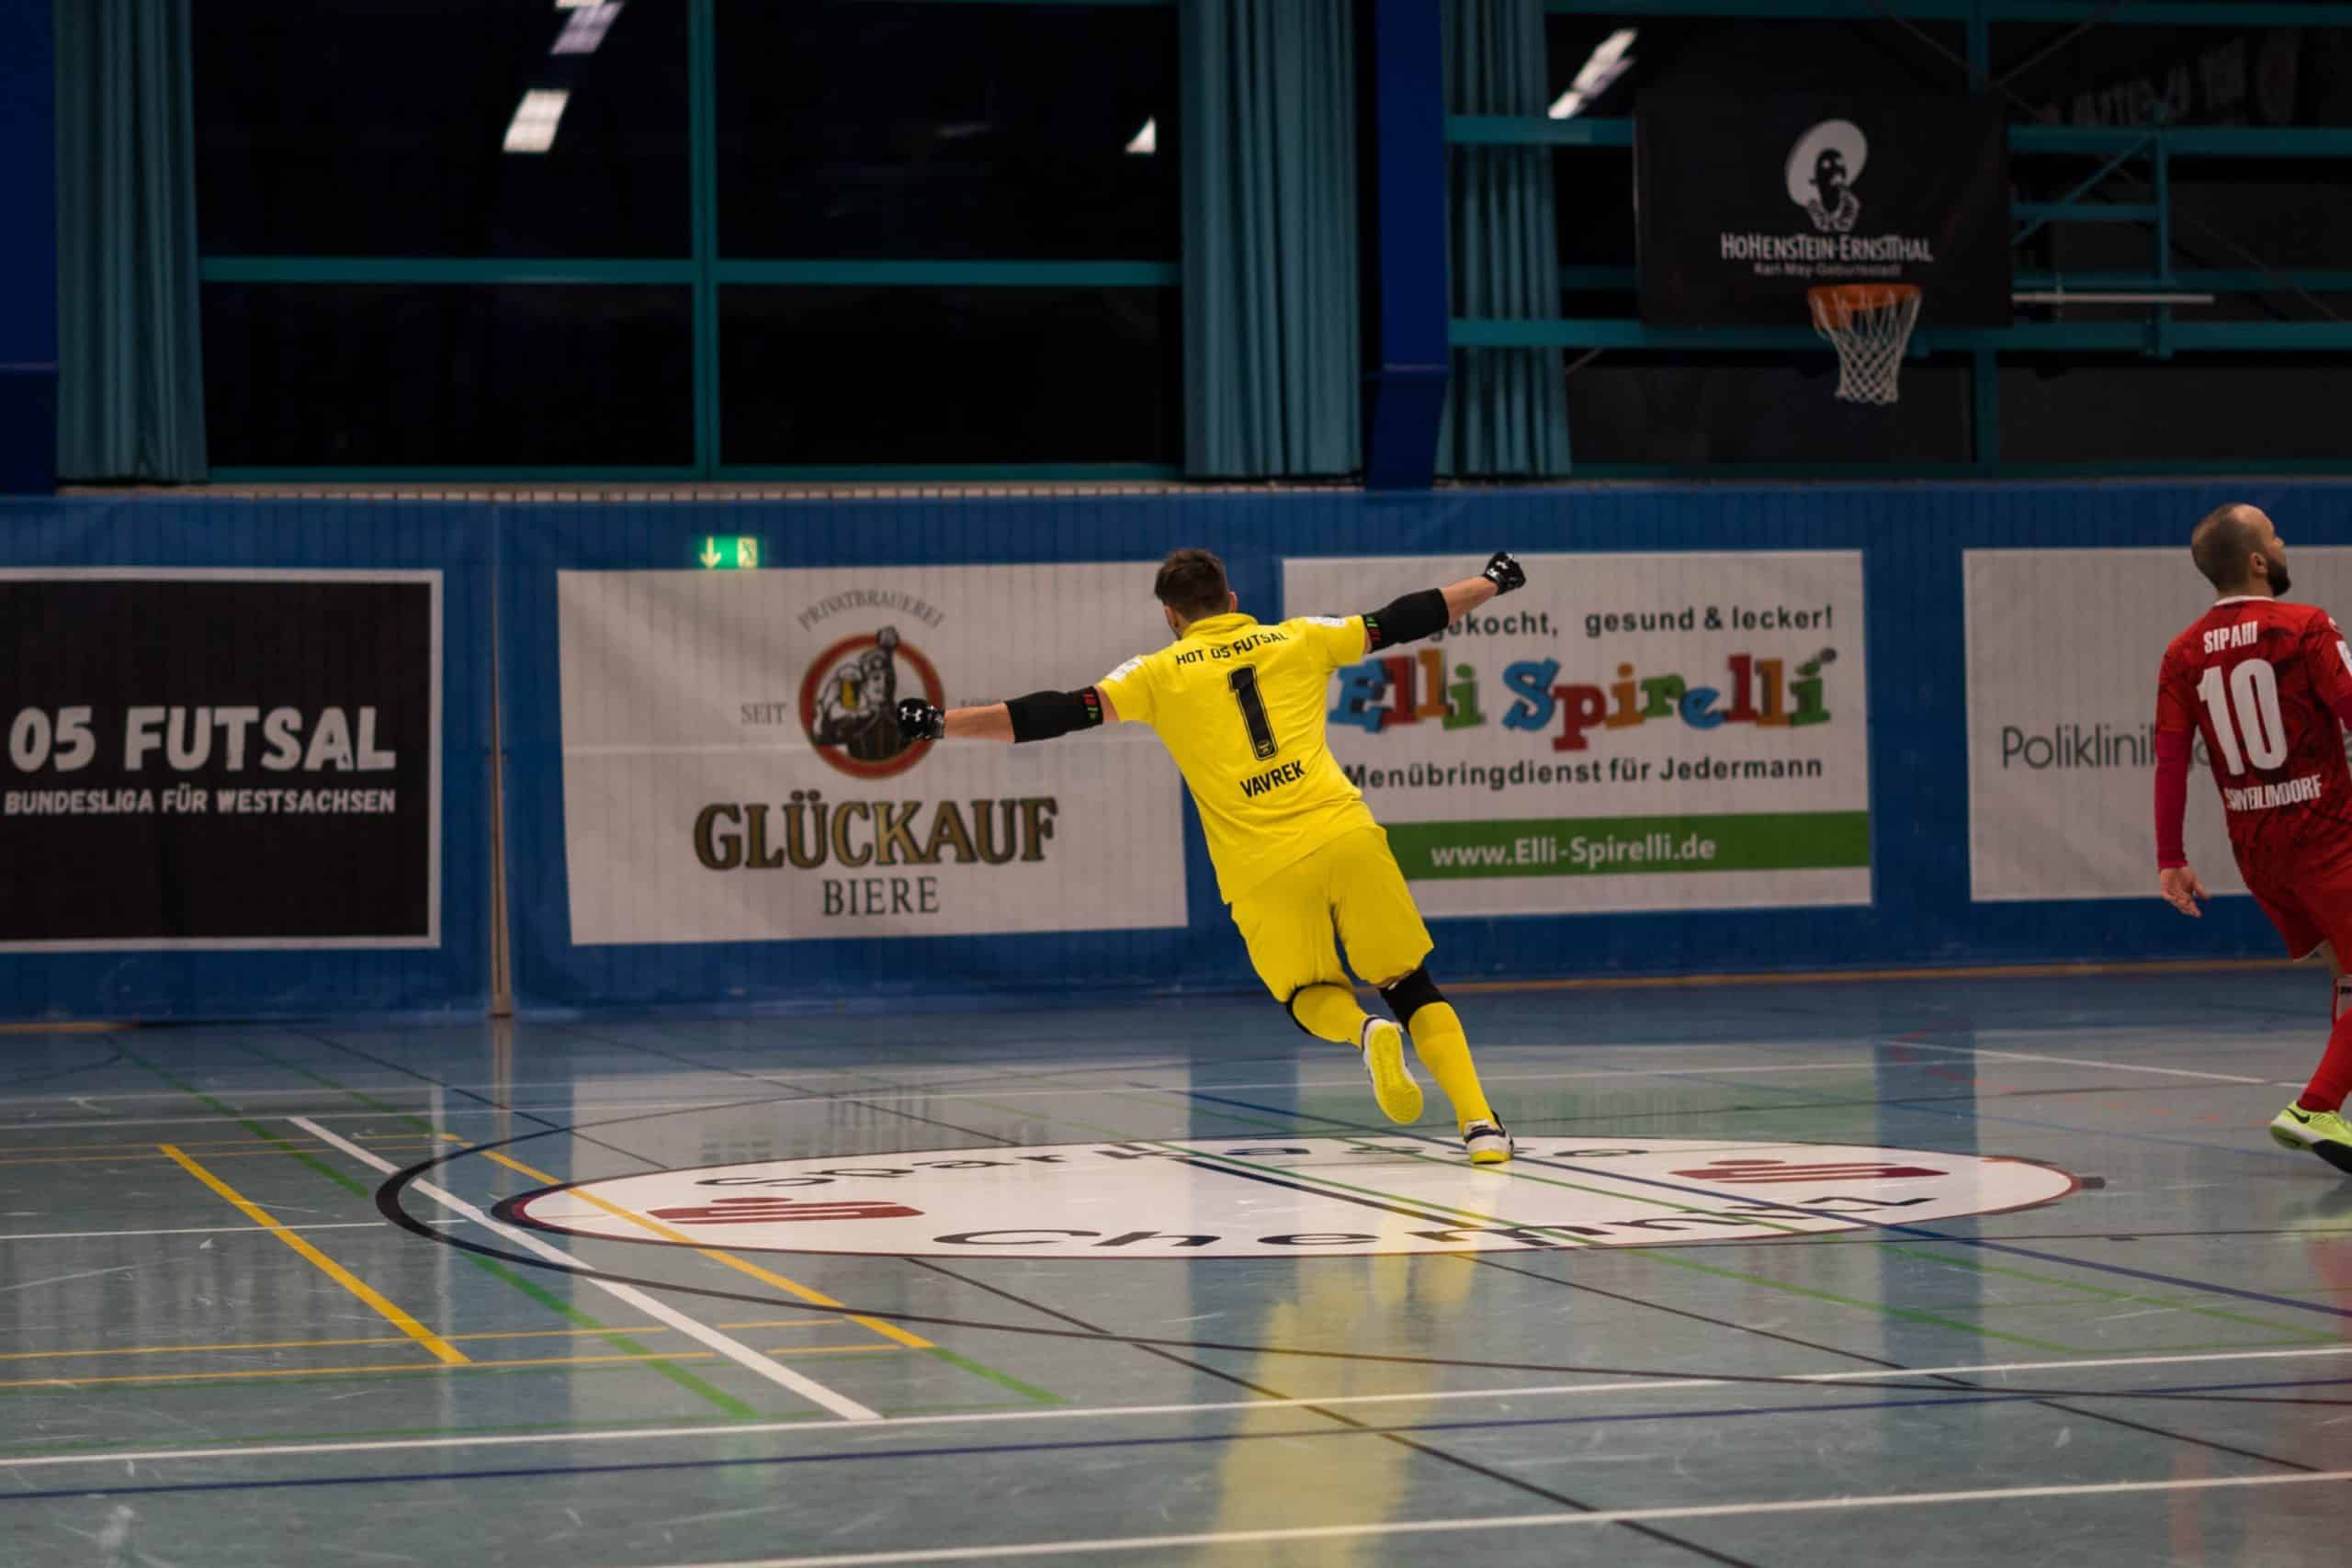 DSC04309 scaled - Die Futsal-Bundesliga geht in die Playoffs | Eine spannende Premierensaison im Überblick